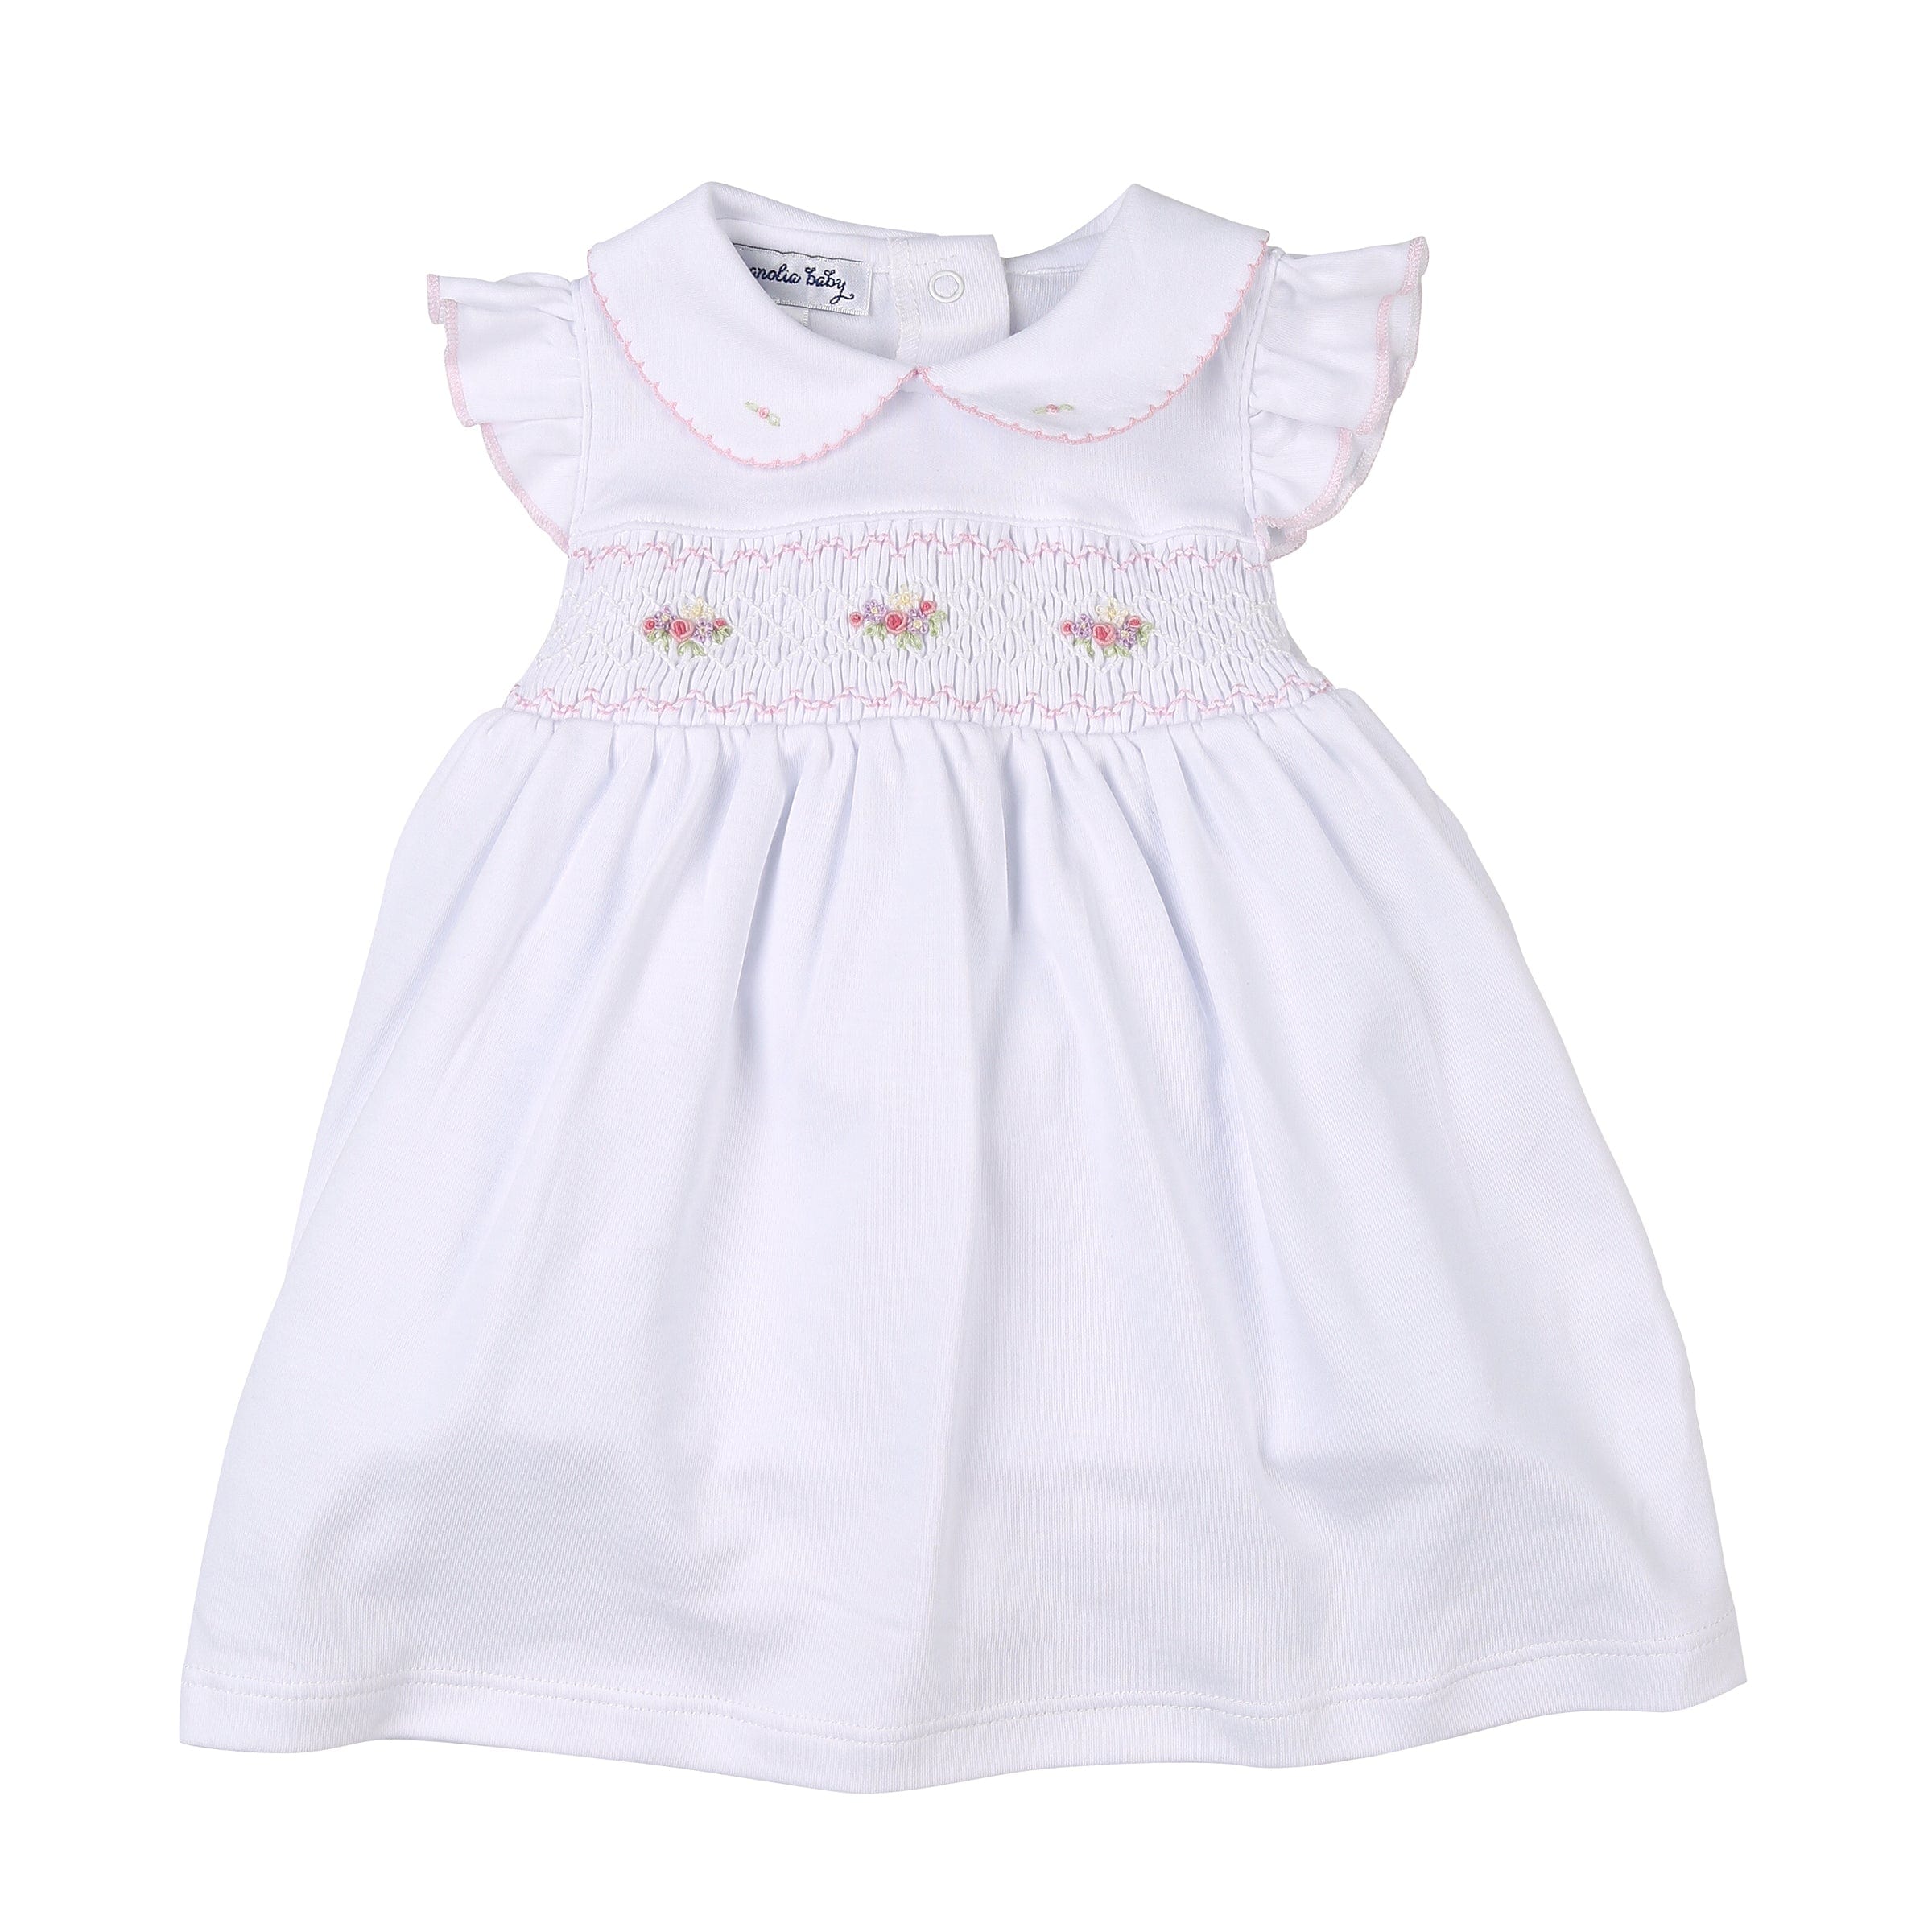 MAGNOLIA BABY - Lindsay Smocked Dress Set - White